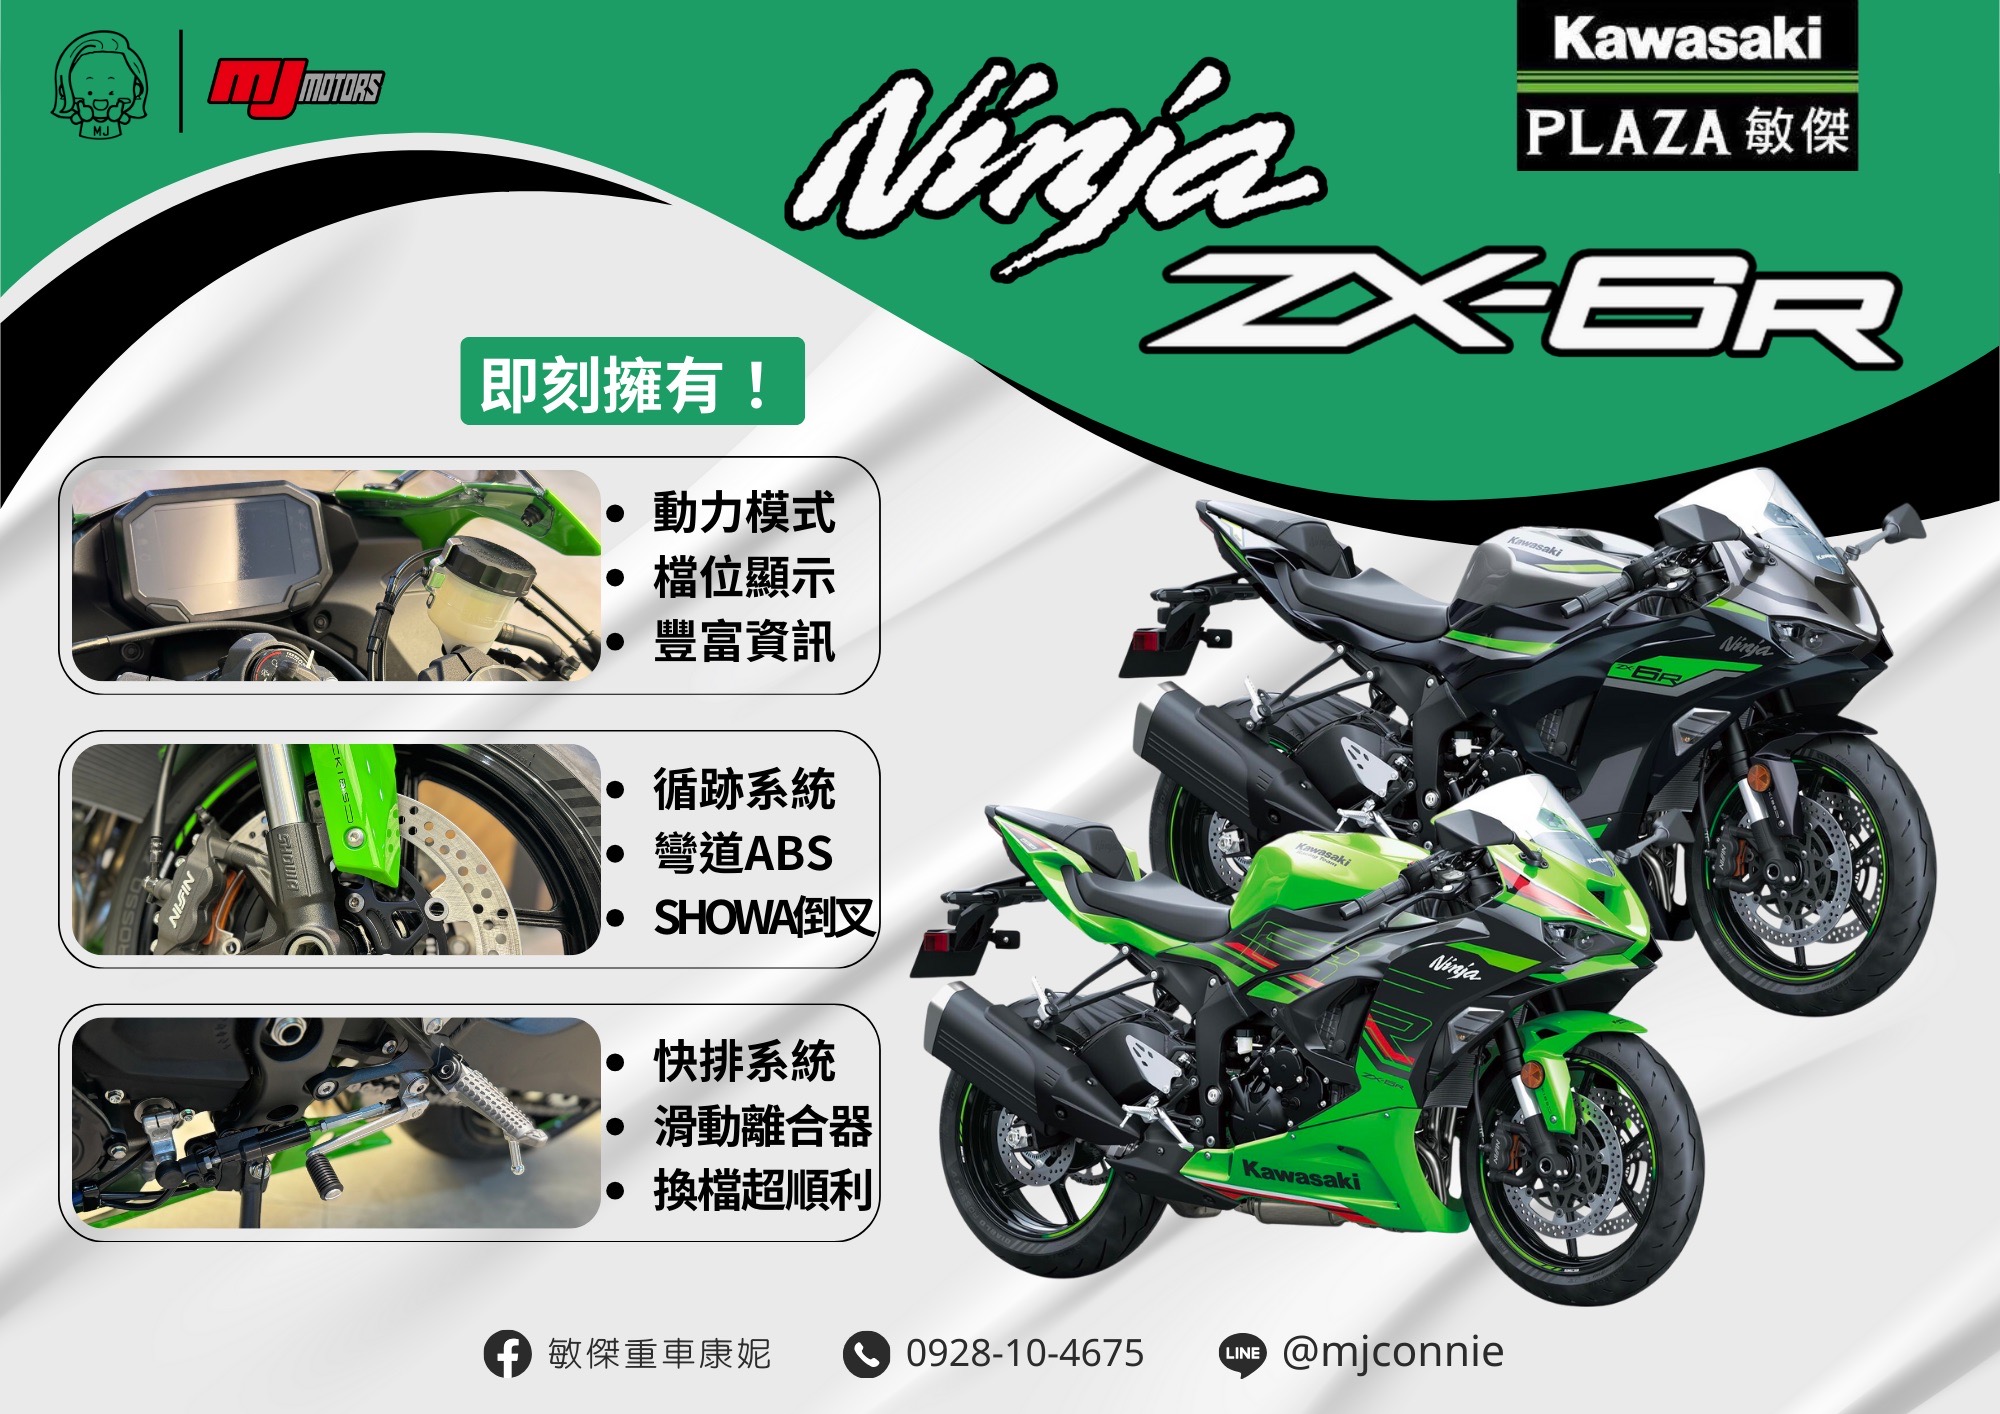 【敏傑車業資深銷售專員 康妮 Connie】KAWASAKI NINJA ZX-6R - 「Webike-摩托車市」 『敏傑康妮』Kawasaki ZX6R 636 帥氣外型 萬轉迷人聲浪  給您快樂的騎乘體驗 價格依內容為主